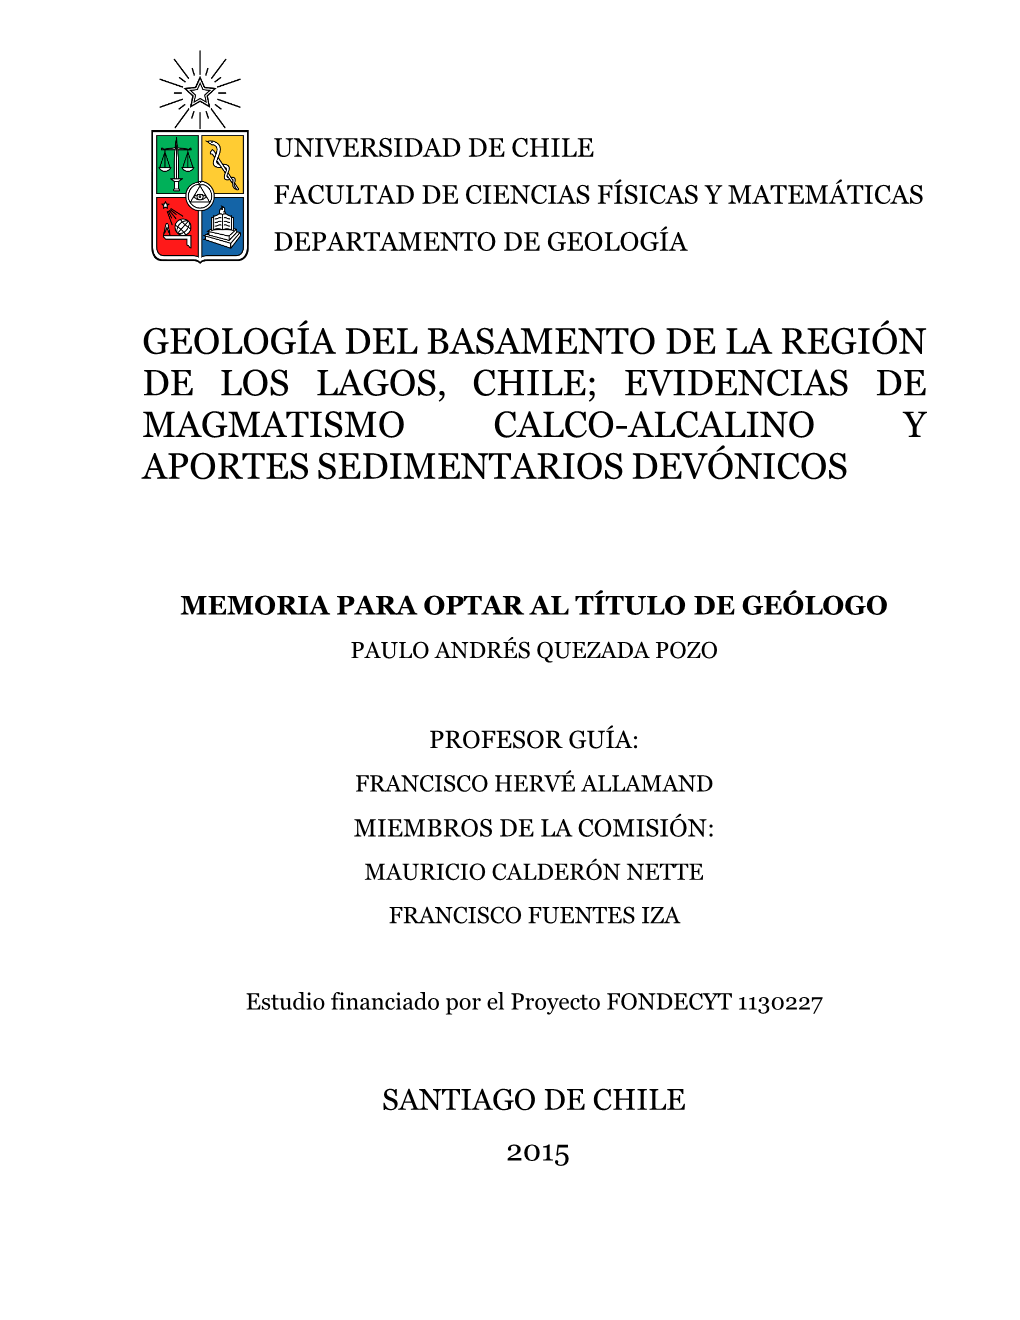 Geología Del Basamento De La Región De Los Lagos, Chile; Evidencias De Magmatismo Calco-Alcalino Y Aportes Sedimentarios Devónicos